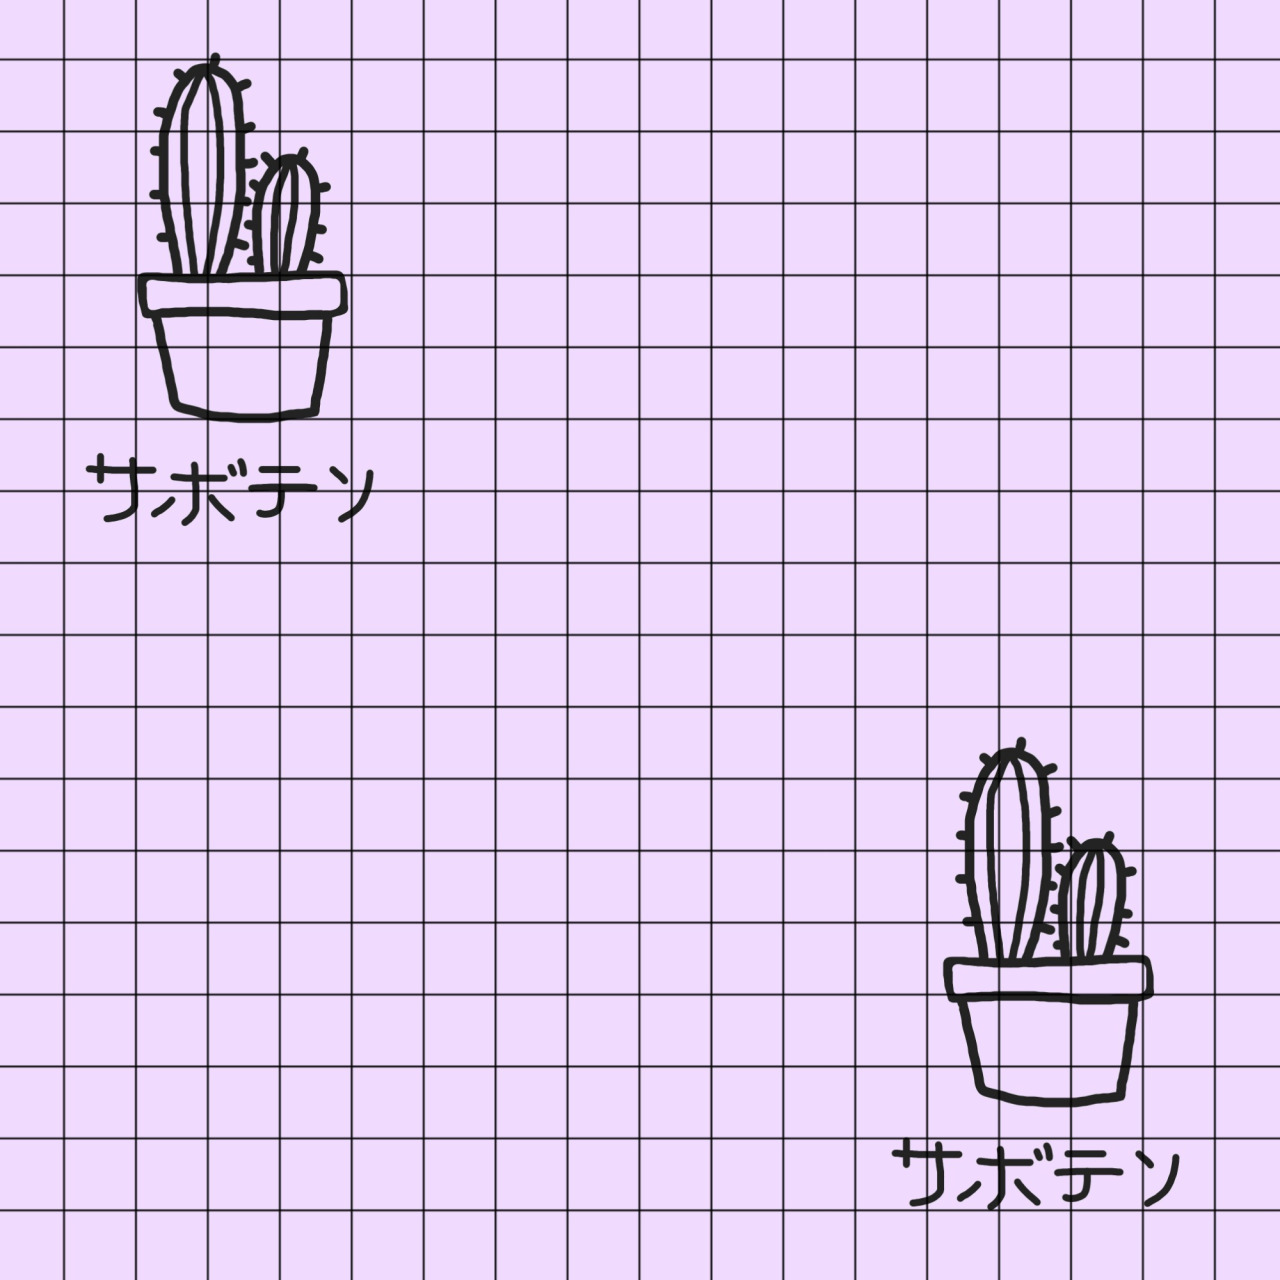 Background Black Grid Cacti Japanese Writing Cactus